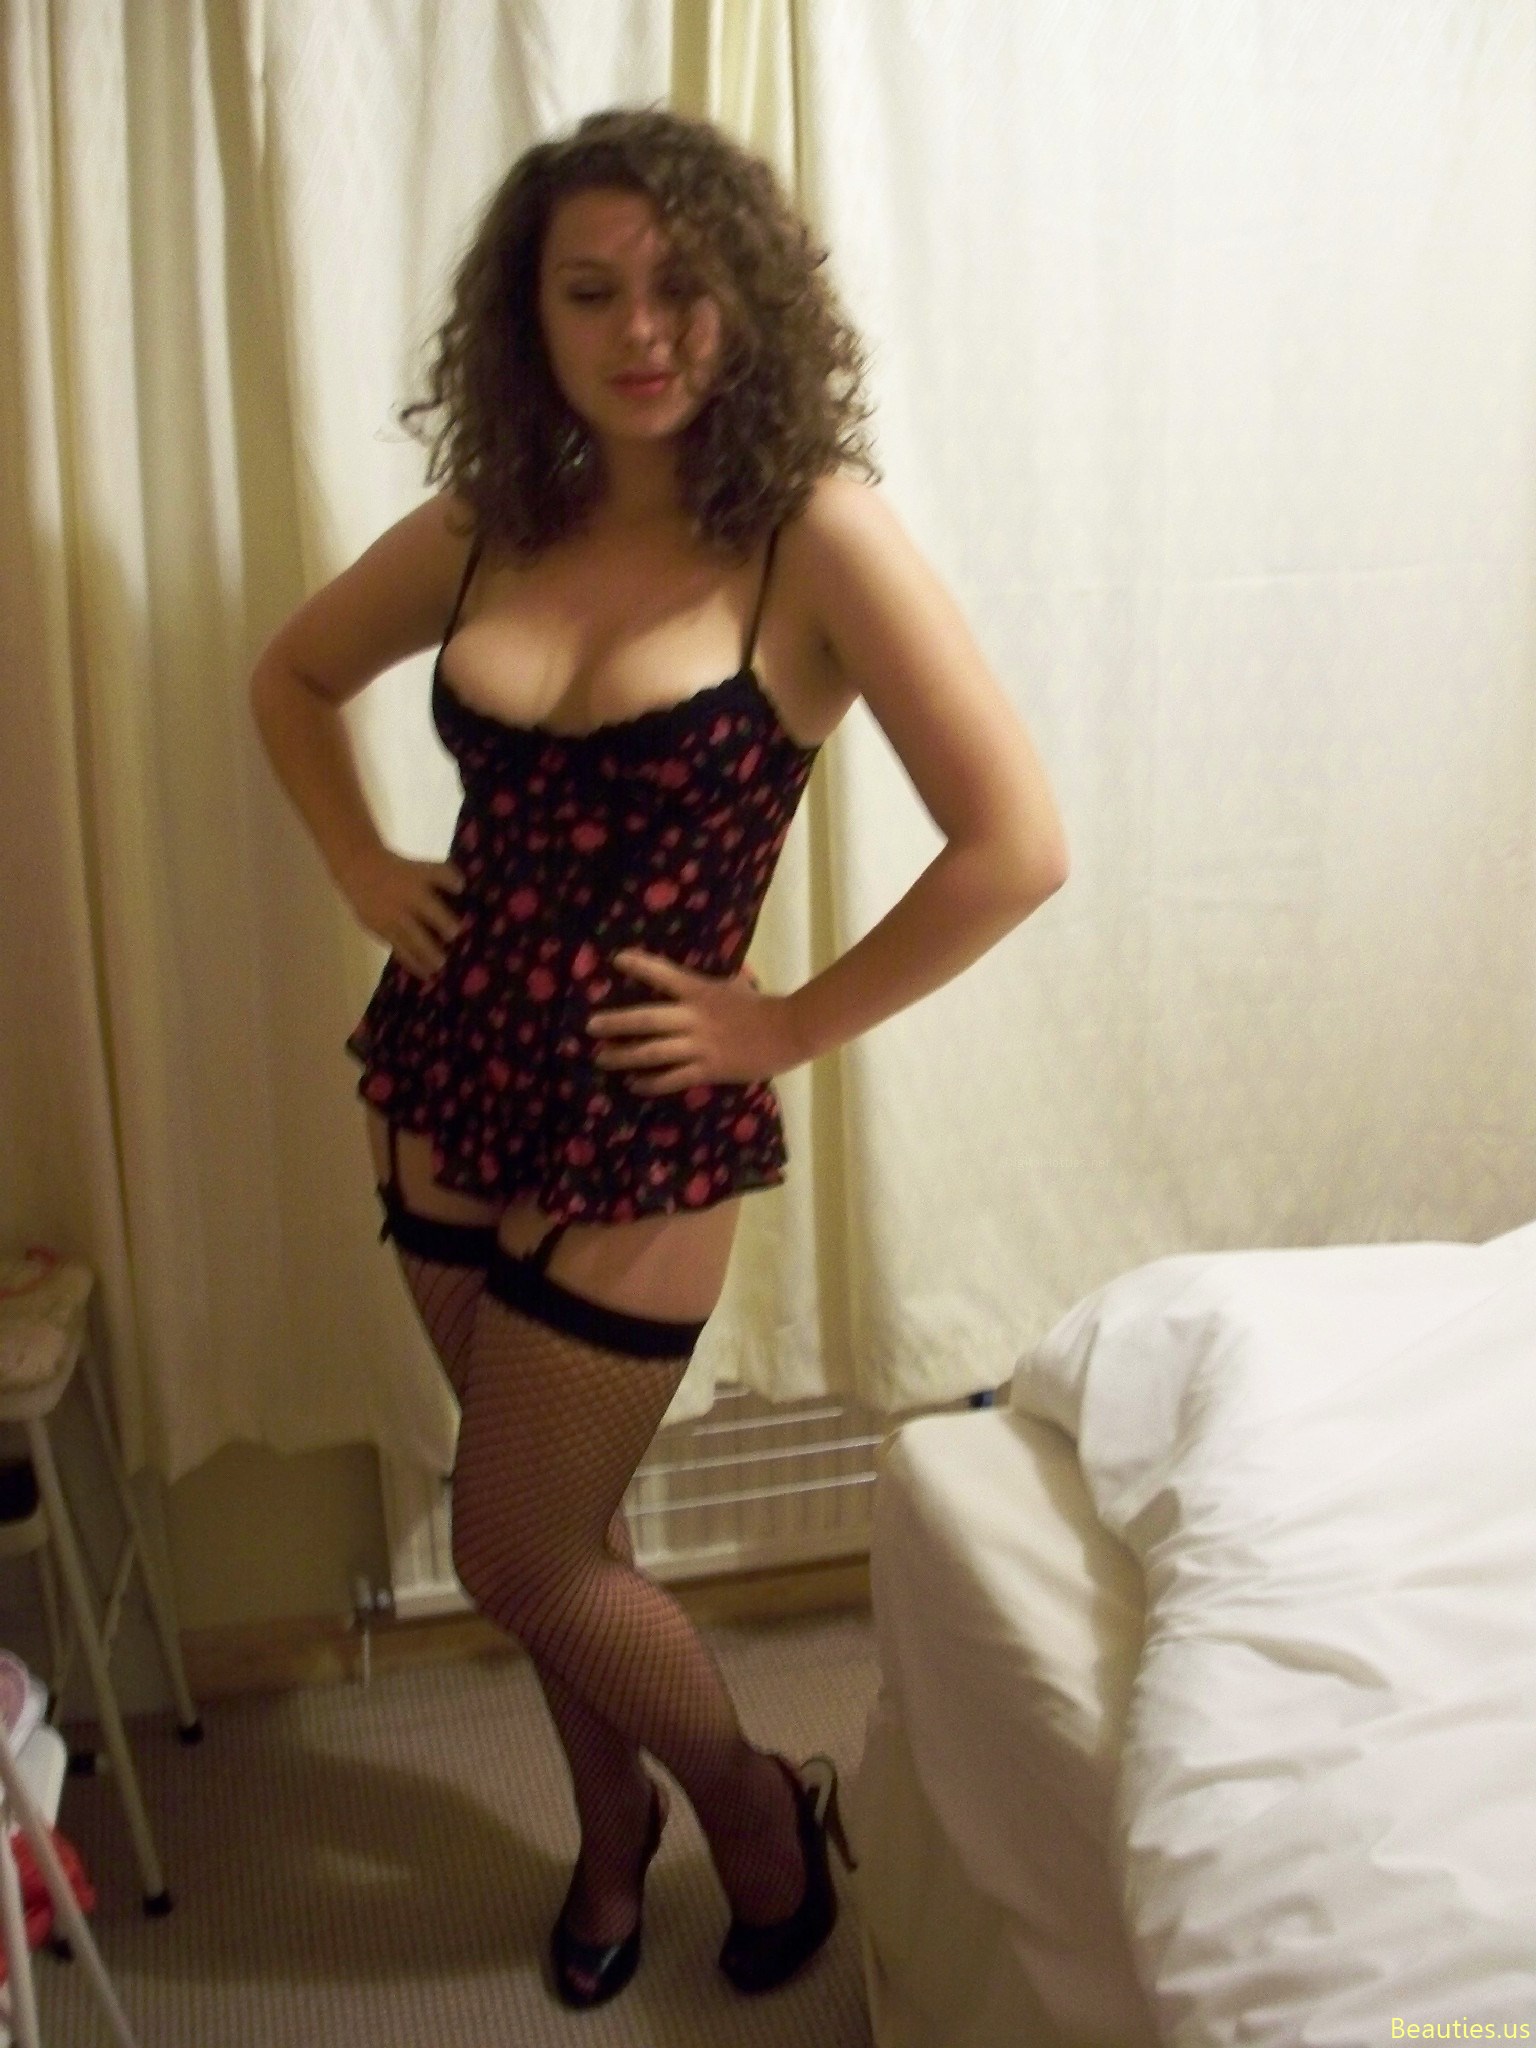 Sweet girl posing in hotel room, on Beach - 1 105.jpg